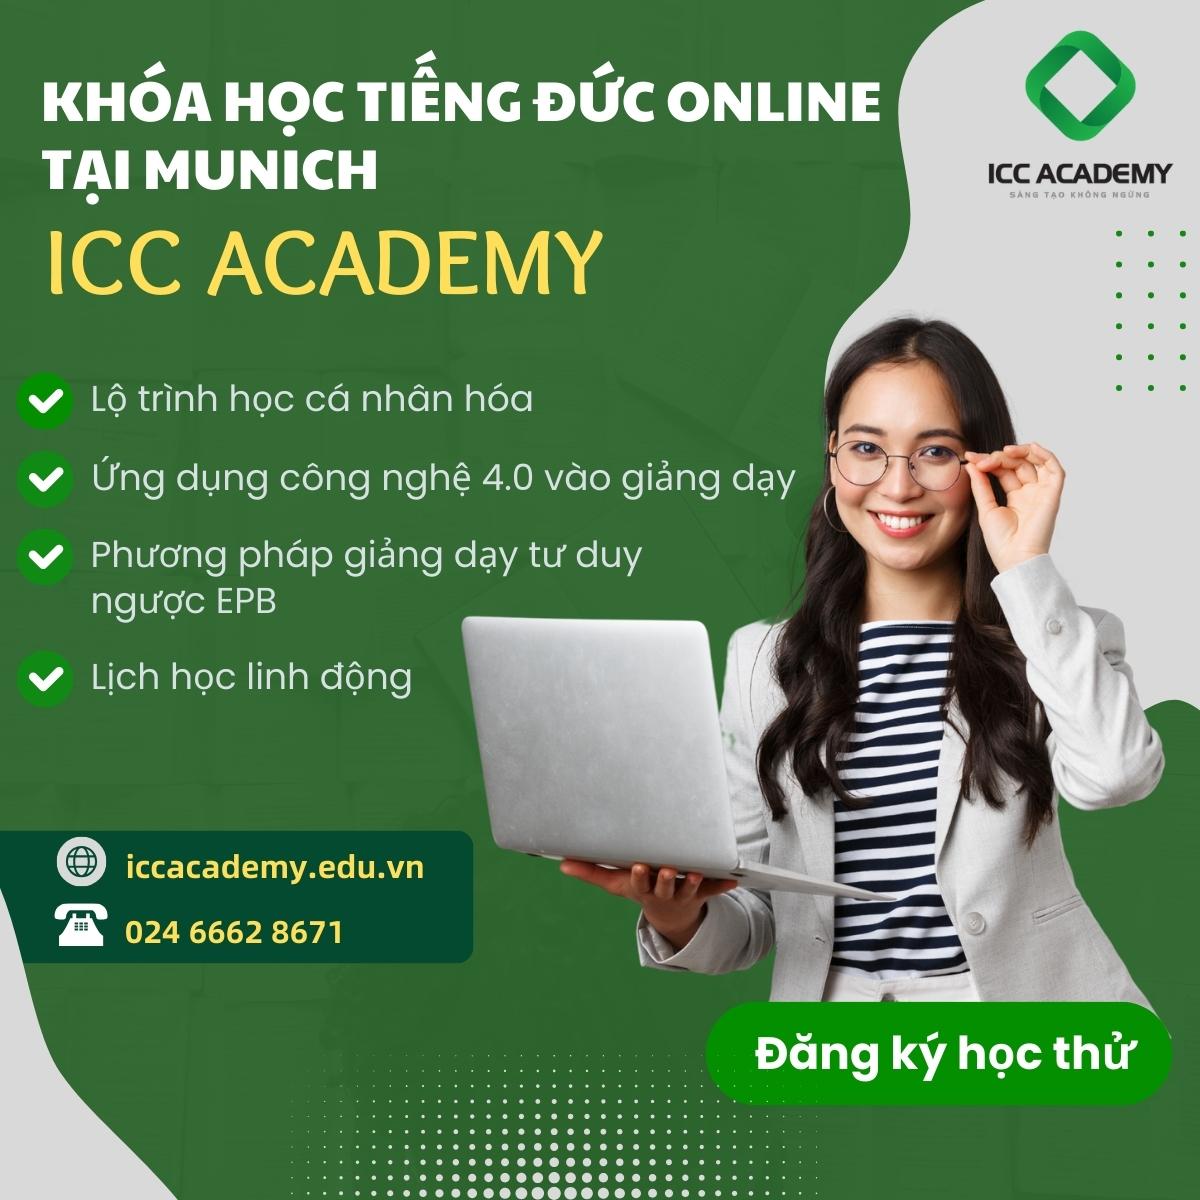 Khóa học tiếng Đức online tại Đức của ICC Academy